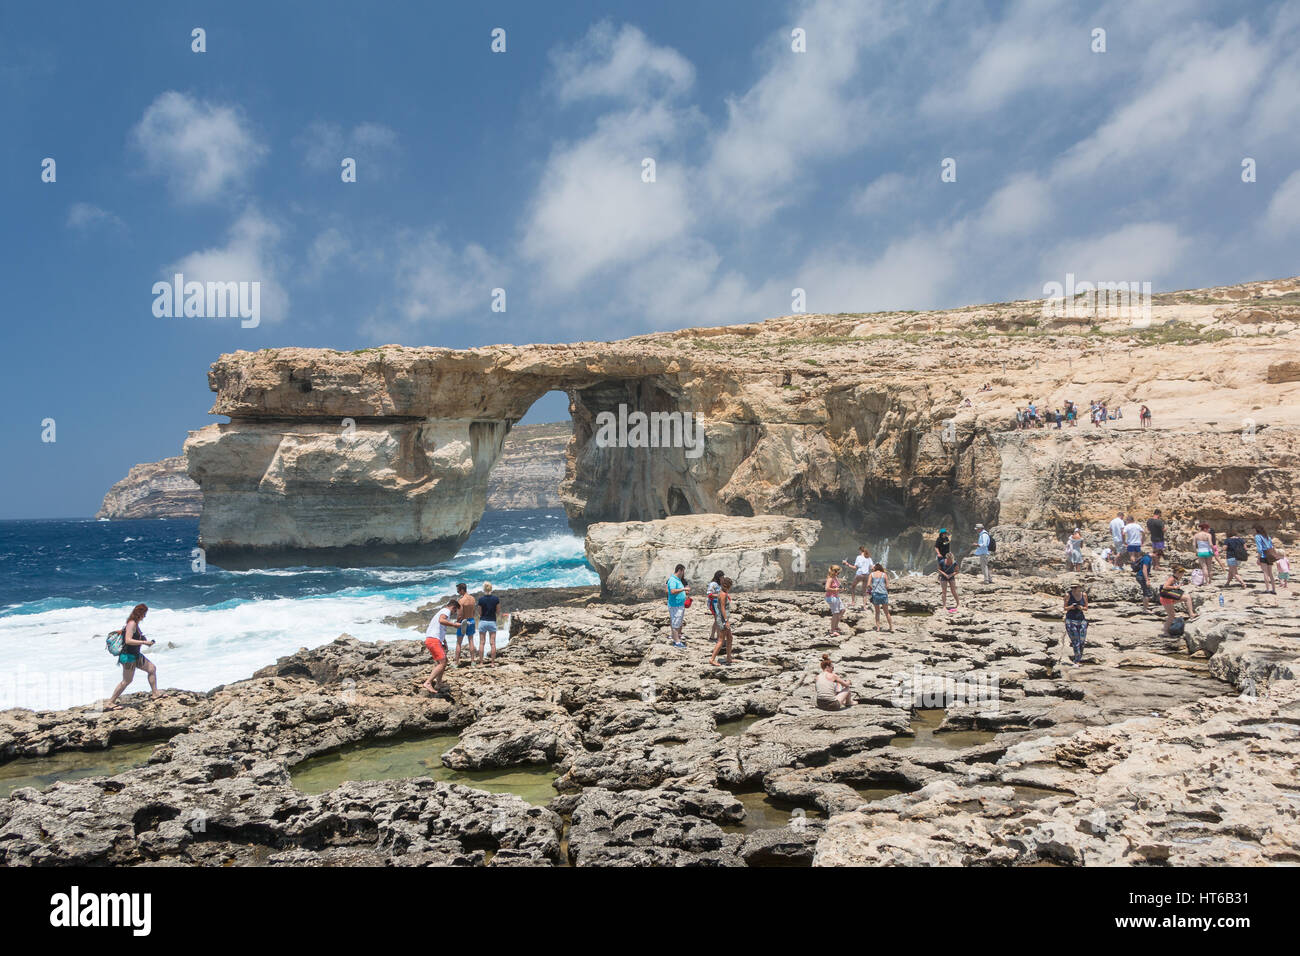 The Azure Window with crashing waves at daytime on Gozo, Malta Stock Photo